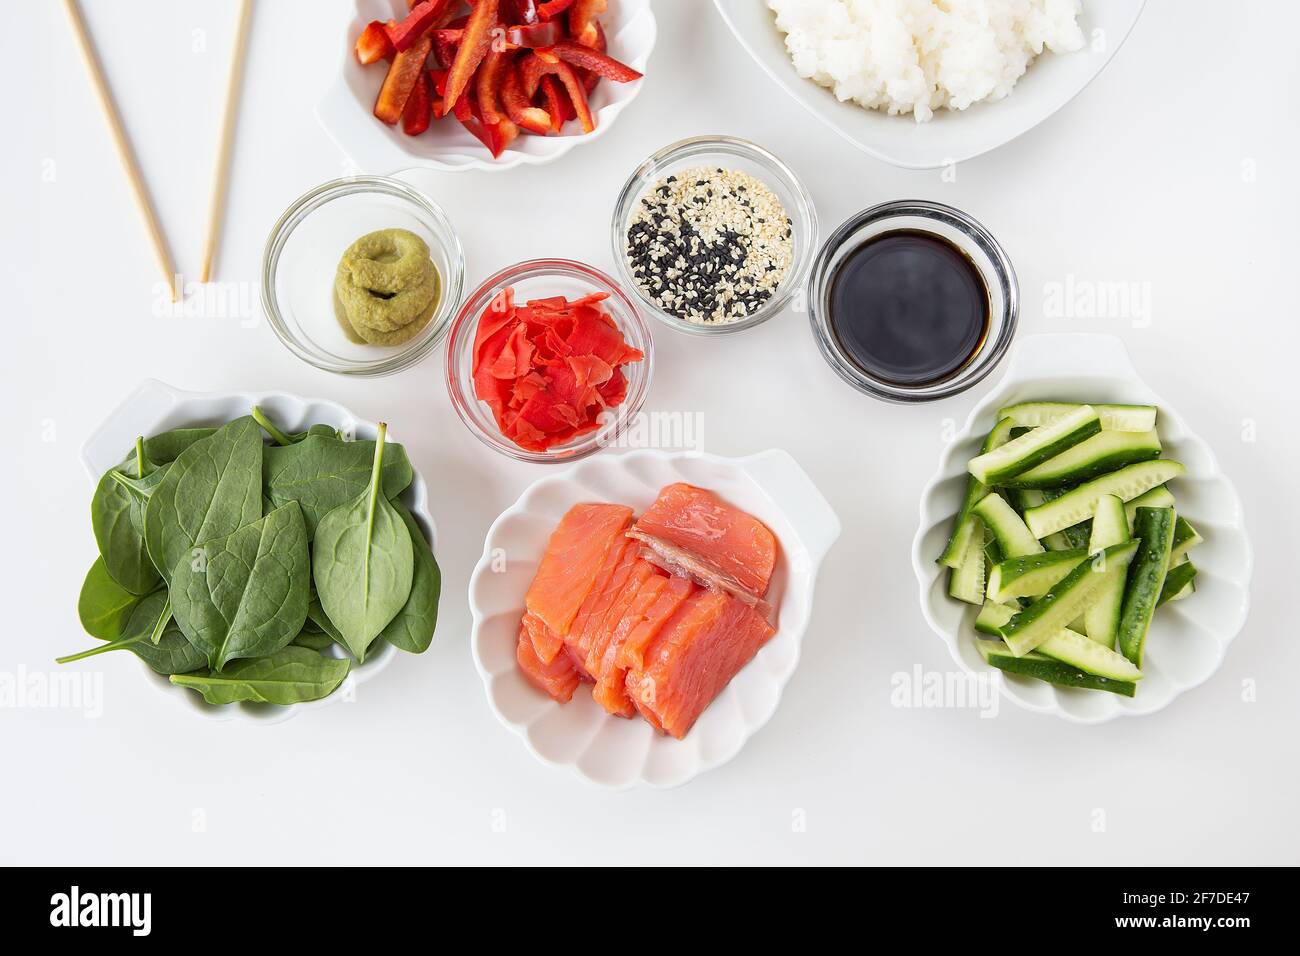 Processus de préparation de sushi, préparation de tous les ingrédients pour  le riz sushi, le saumon, le poivre, les graines de sésame, la sauce,  wasabi, gingembre. Vue de dessus Photo Stock -